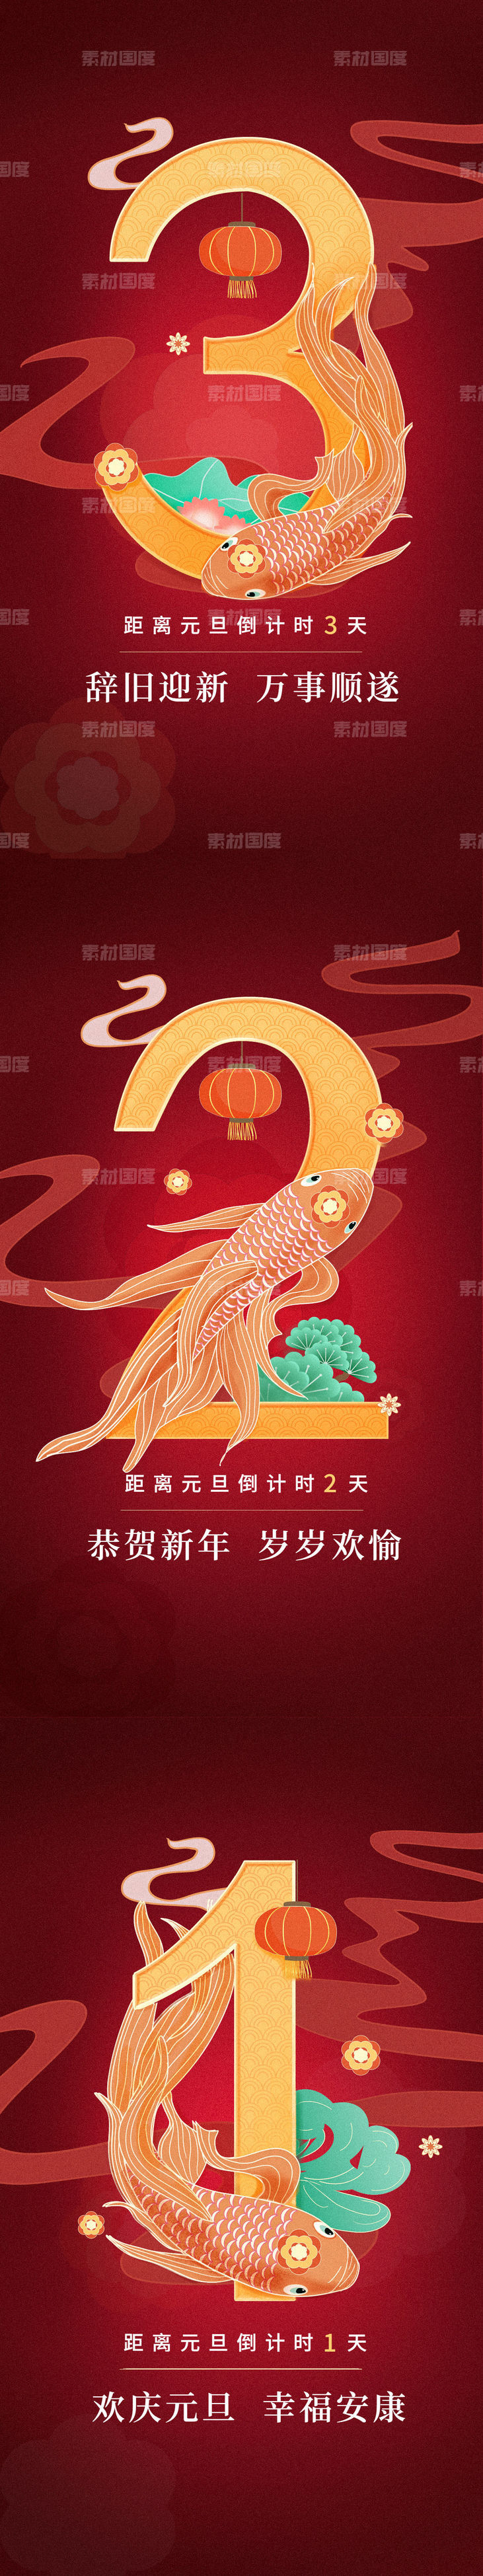 国潮新年锦鲤倒计时系列海报